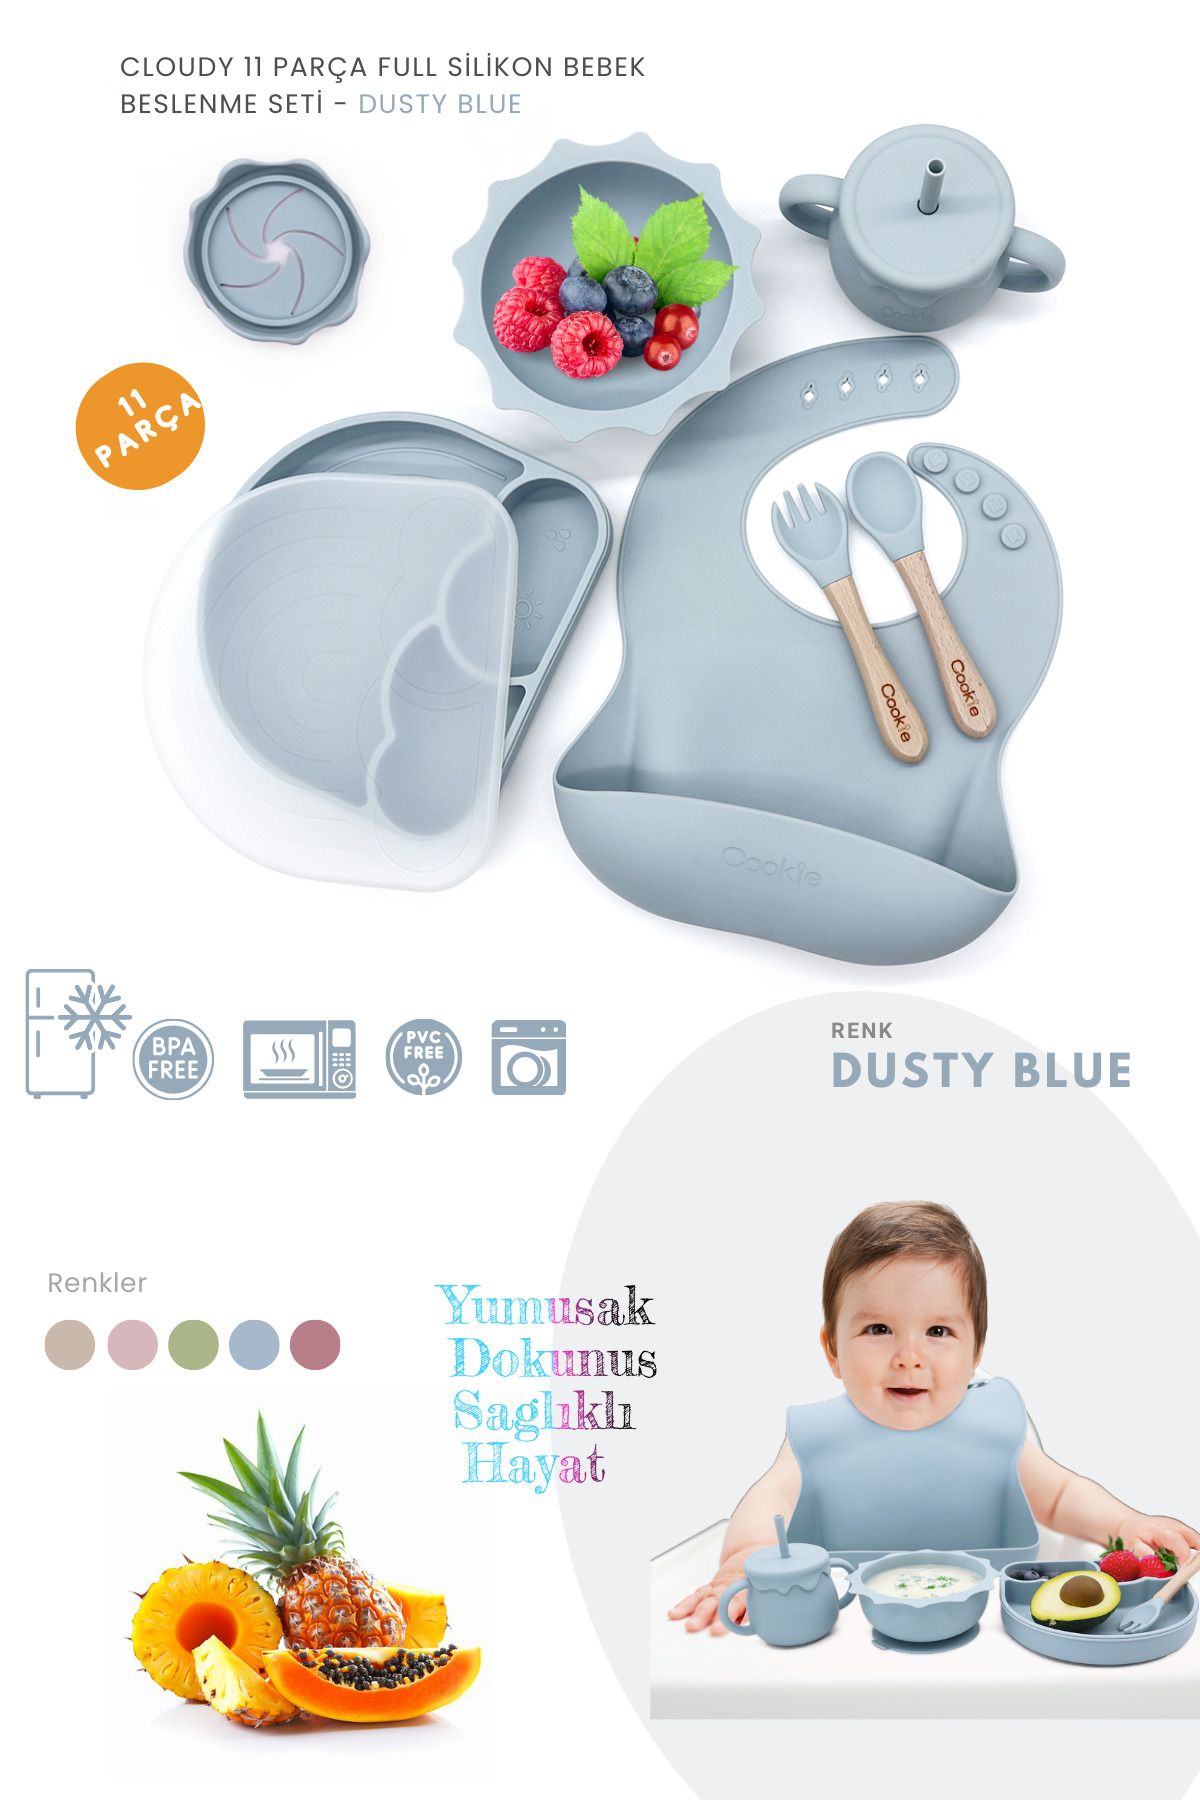 Kiwi Cloudy 11 Parça Full Silikon Bebek Beslenme Seti: Güvenli, Esnek, BPA / PVC İçermez, Doğal